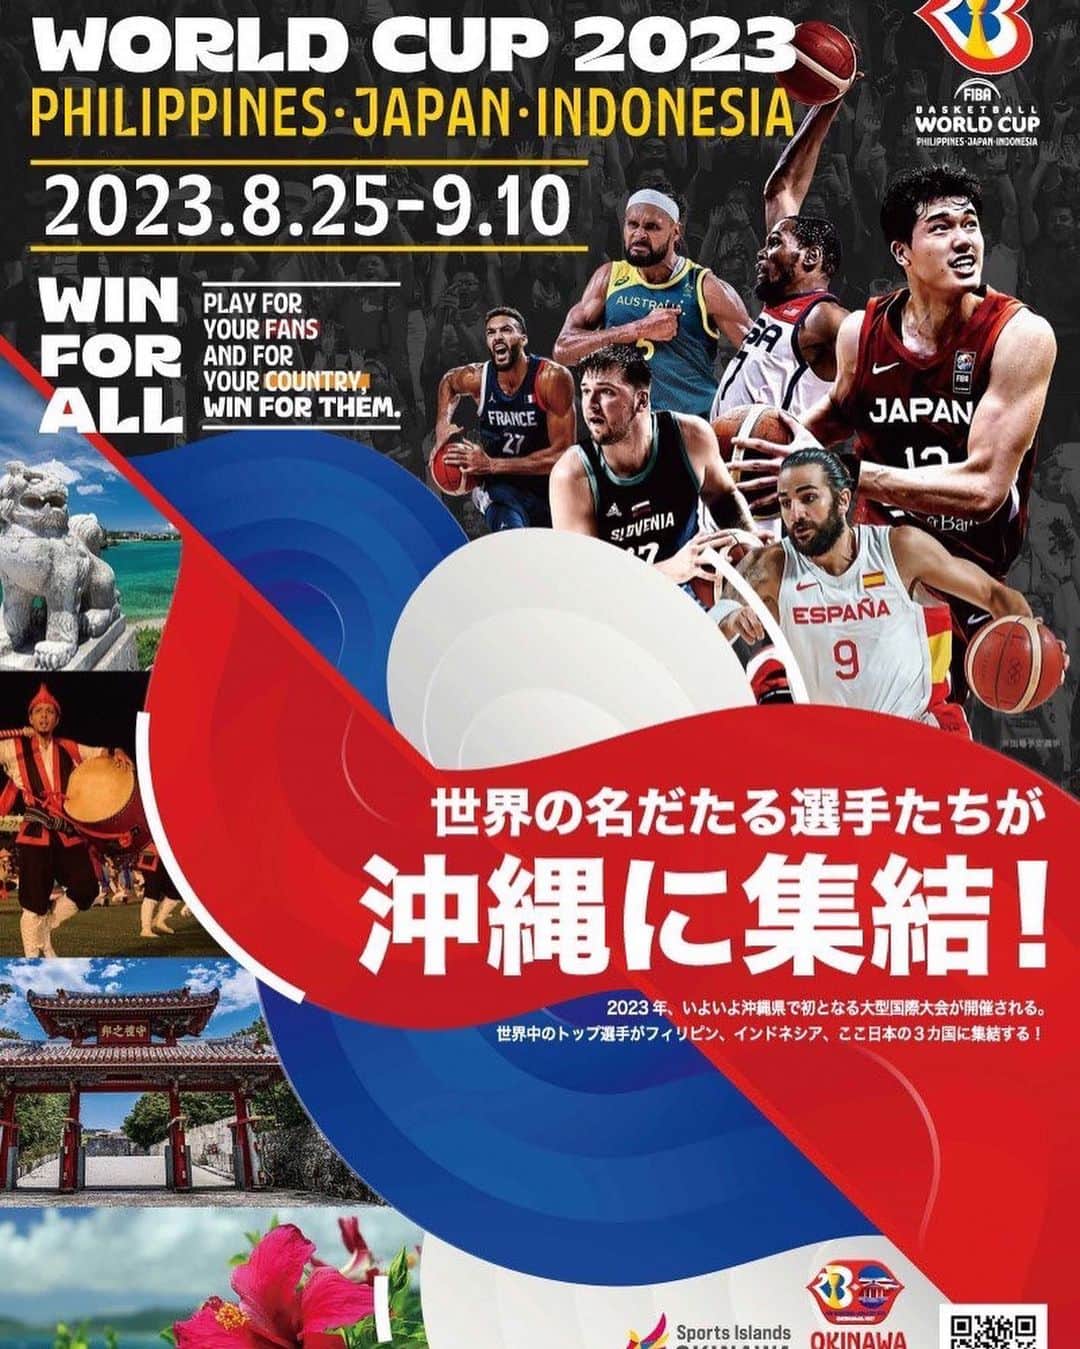 松崎夕のインスタグラム：「@fibawc   ☑︎☑︎☑︎  2023年FIBAバスケットボール・ワールドカップ FIBA Basketball World Cup 2023 (🗓️2023.8.25-9.10)  開催国の一つ、日本🇯🇵沖縄アリーナにて @dj_kaname28 @youngmo098 のお2人と共に会場DJを担当させて頂きます🏀✨  Thank you for the great opportunity, I look forward to it!  #FIBAWC #WinForAll #Basketball #沖縄アリーナ」